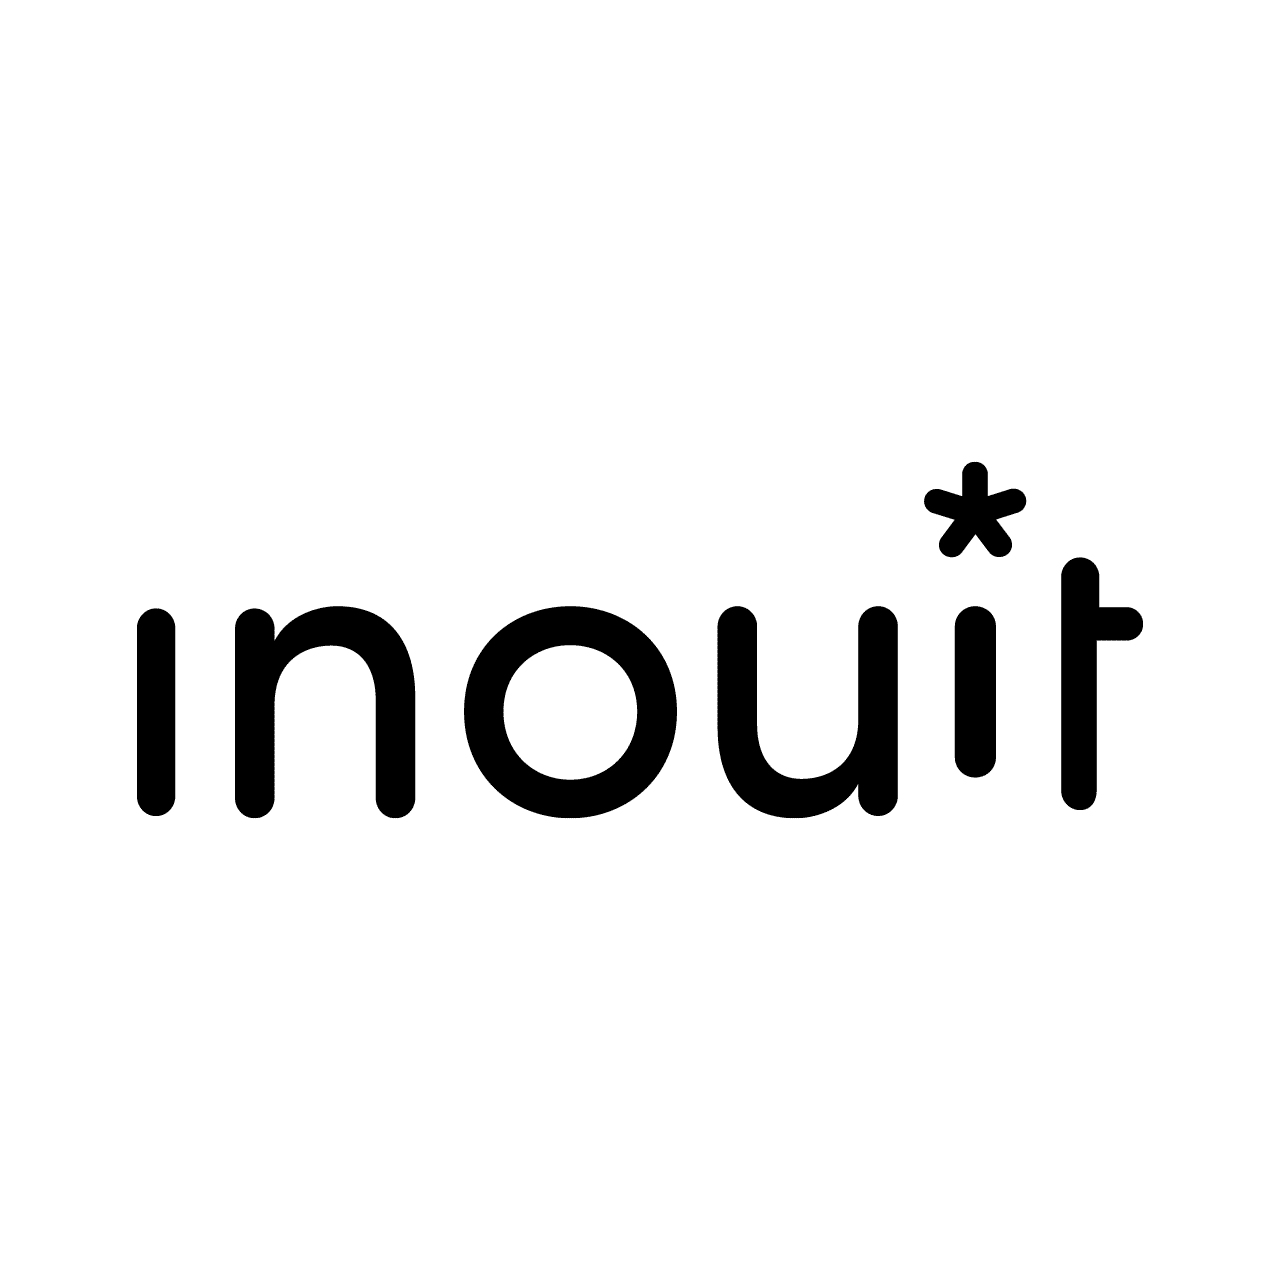 Inouit